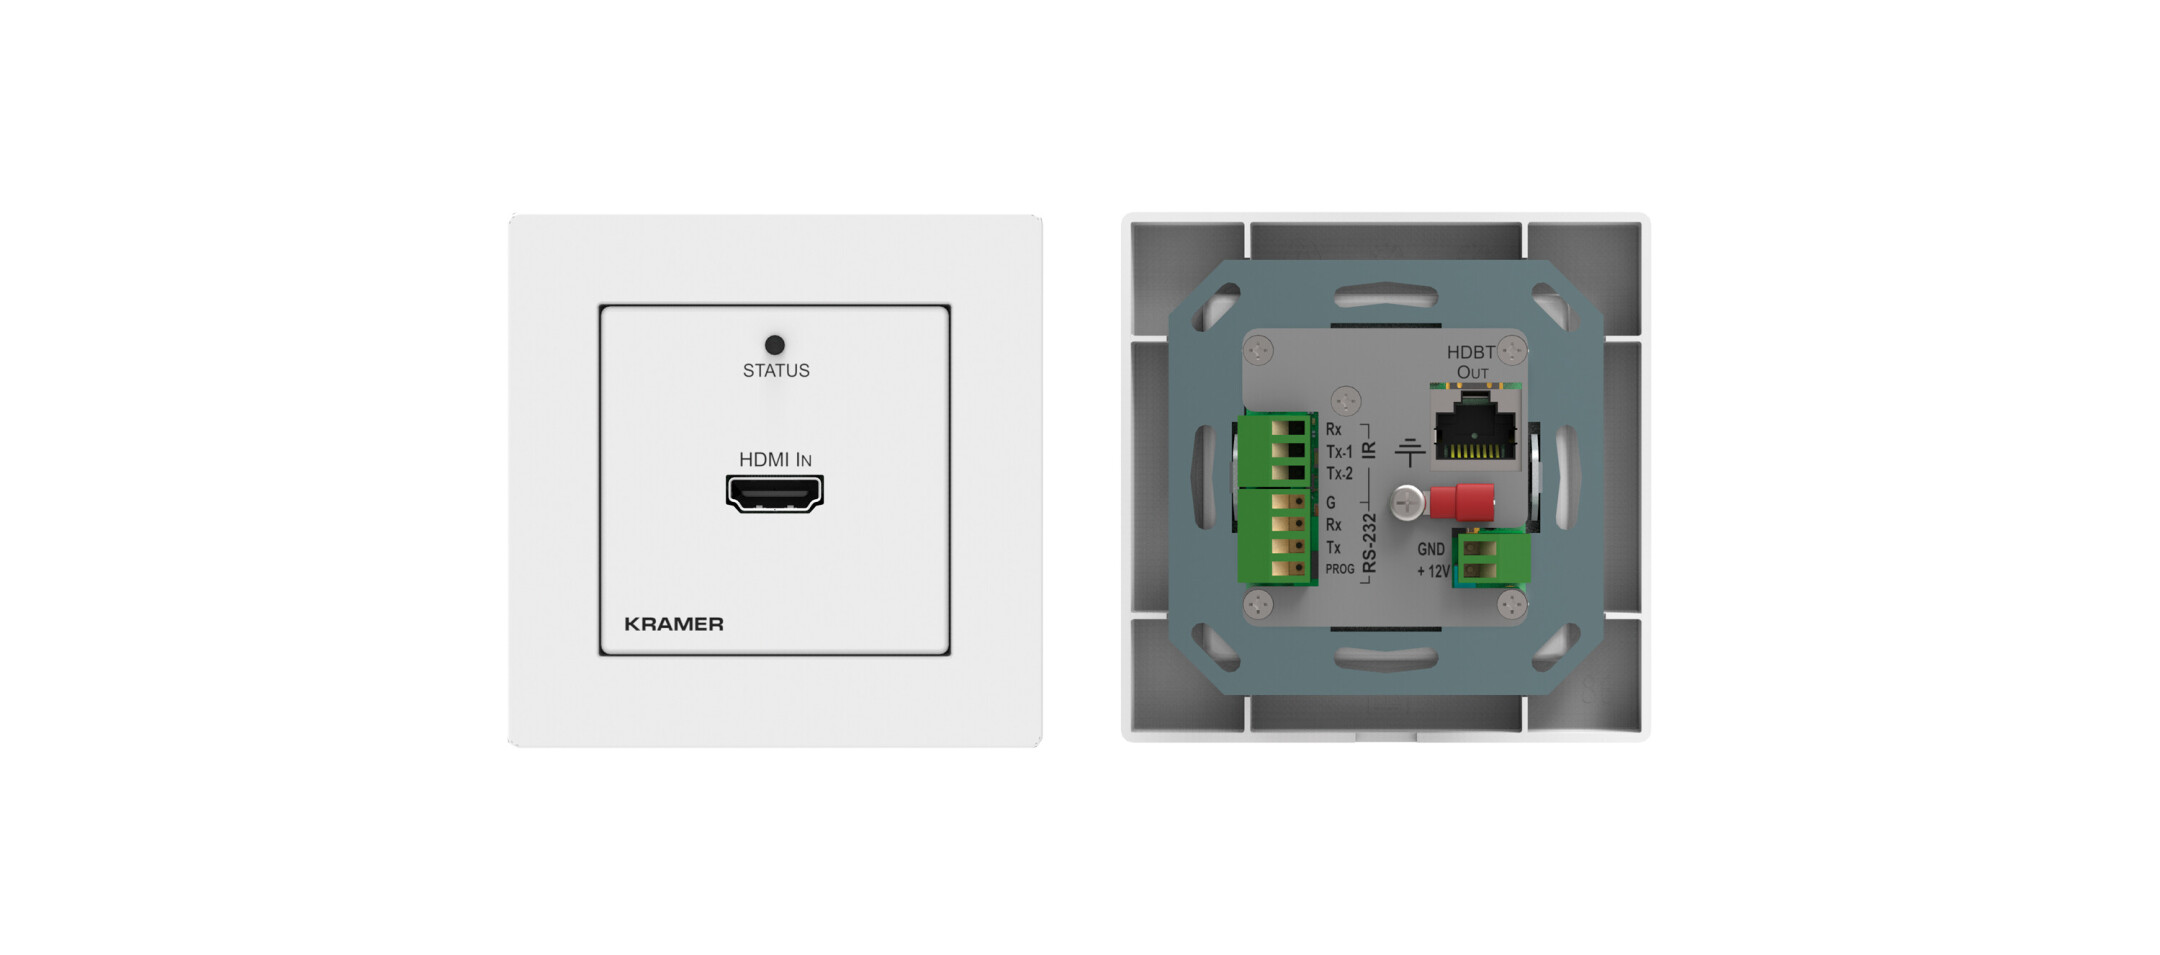 Kramer-WP-789T-4K60-4-2-0-HDMI-1-Gang-PoE-Wall-Plate-Sender-mit-RS-232-IR-mit-grosser-Reichweite-uber-HDBaseT